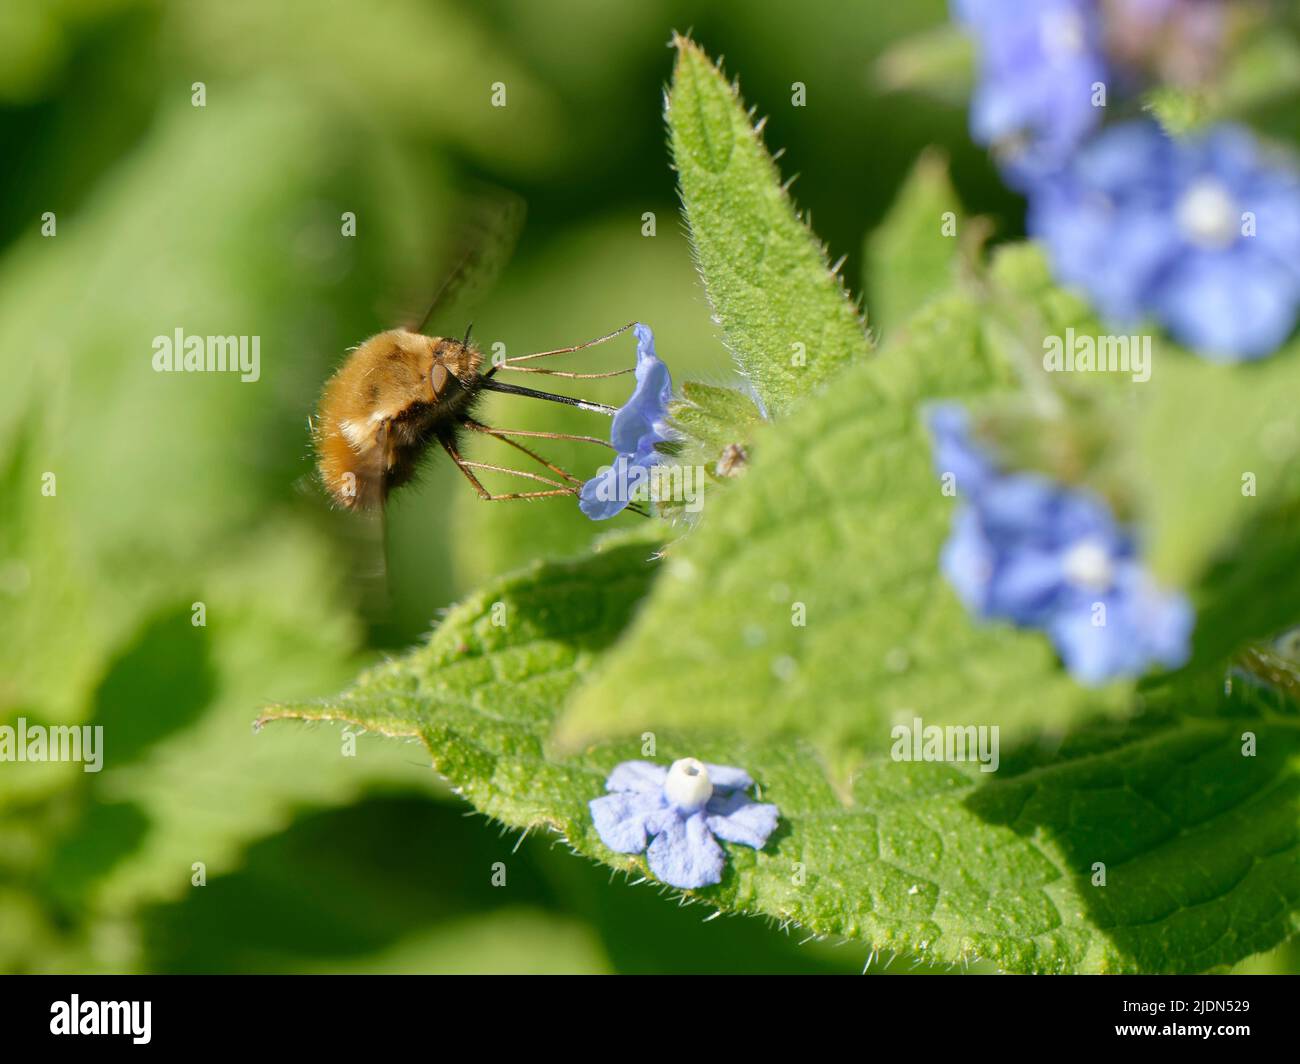 Mosca de la abeja punteada (Bombylius discolor) que ronca y nectaring de una flor de alcanet verde (Pentaglottis sempervirens), Bath, Reino Unido, abril. Foto de stock